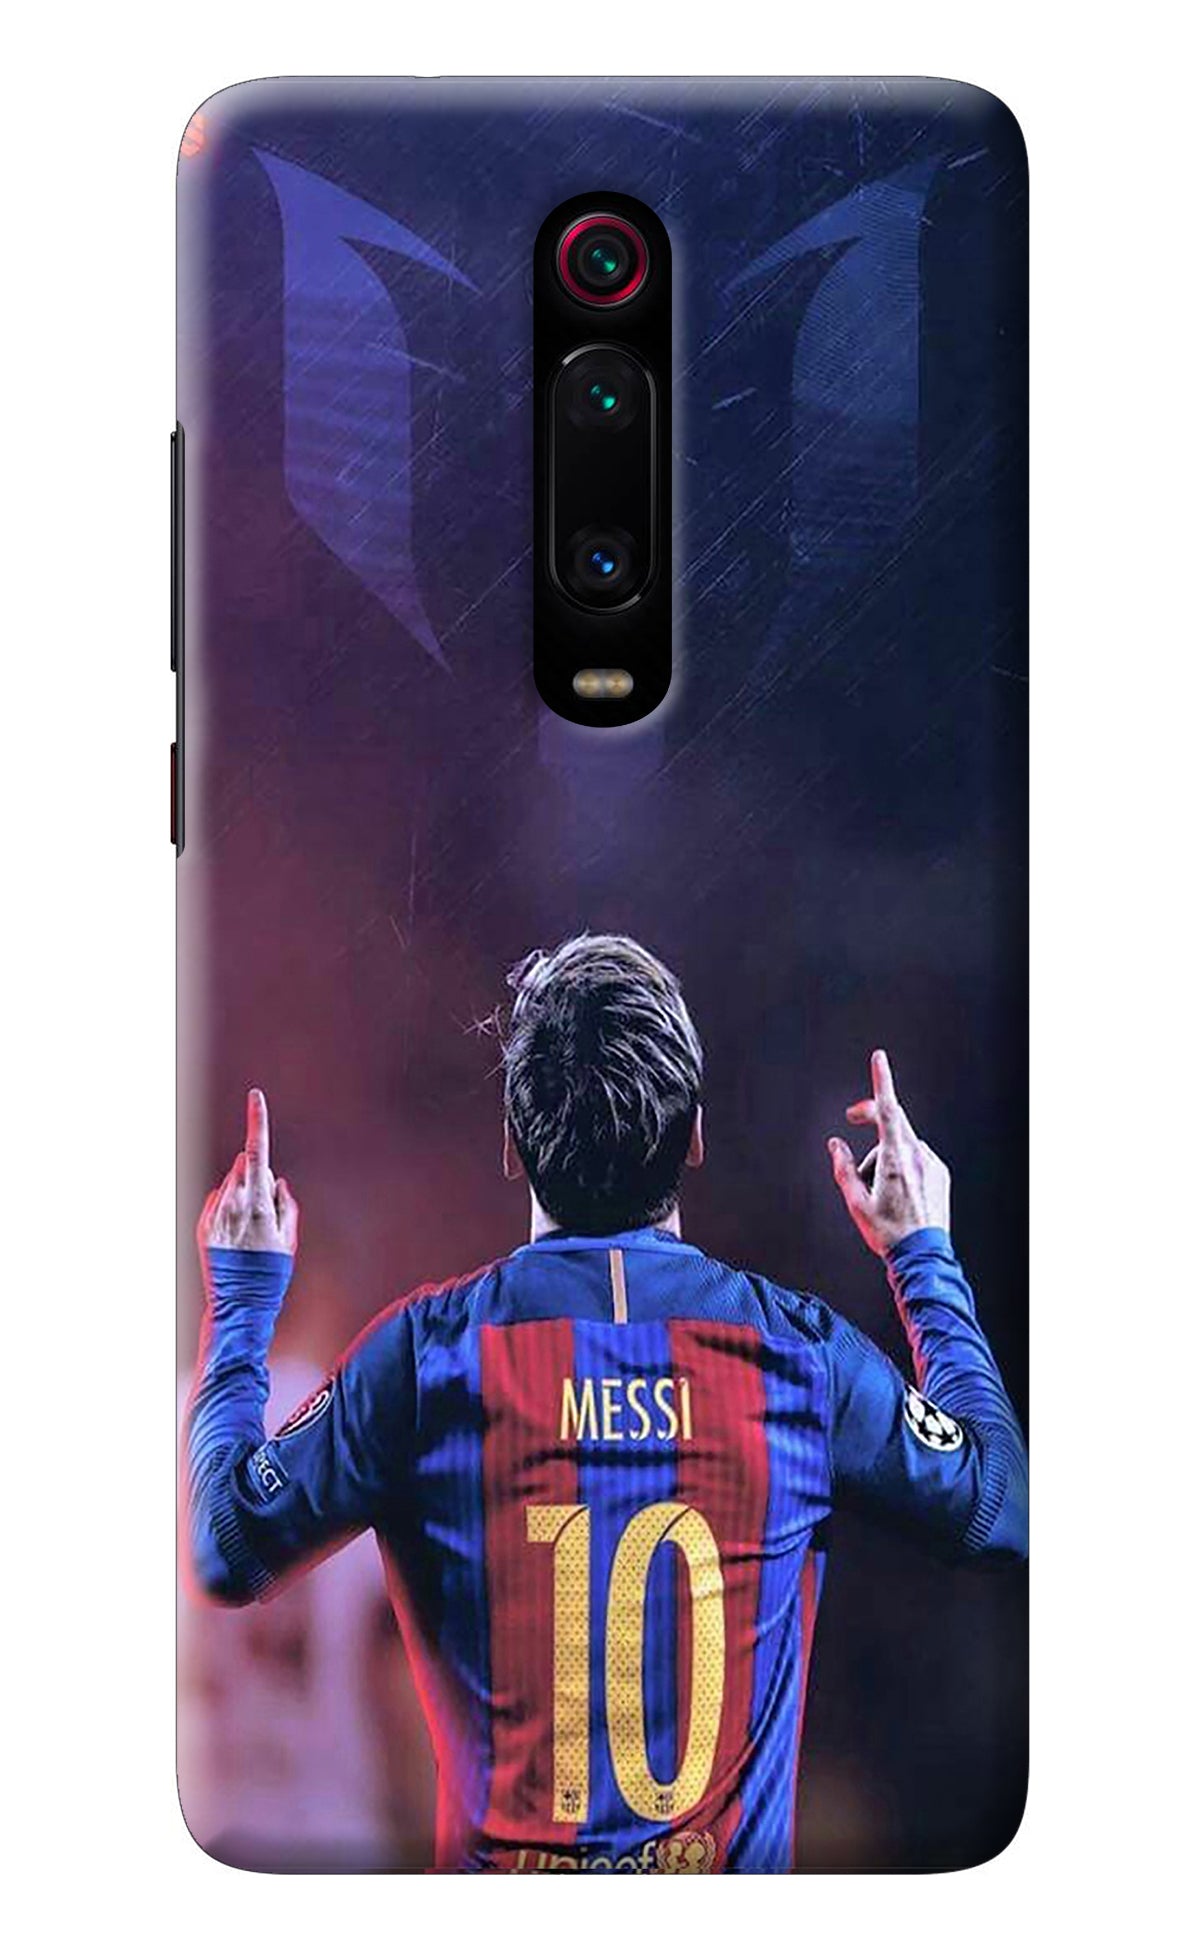 Messi Redmi K20 Pro Back Cover